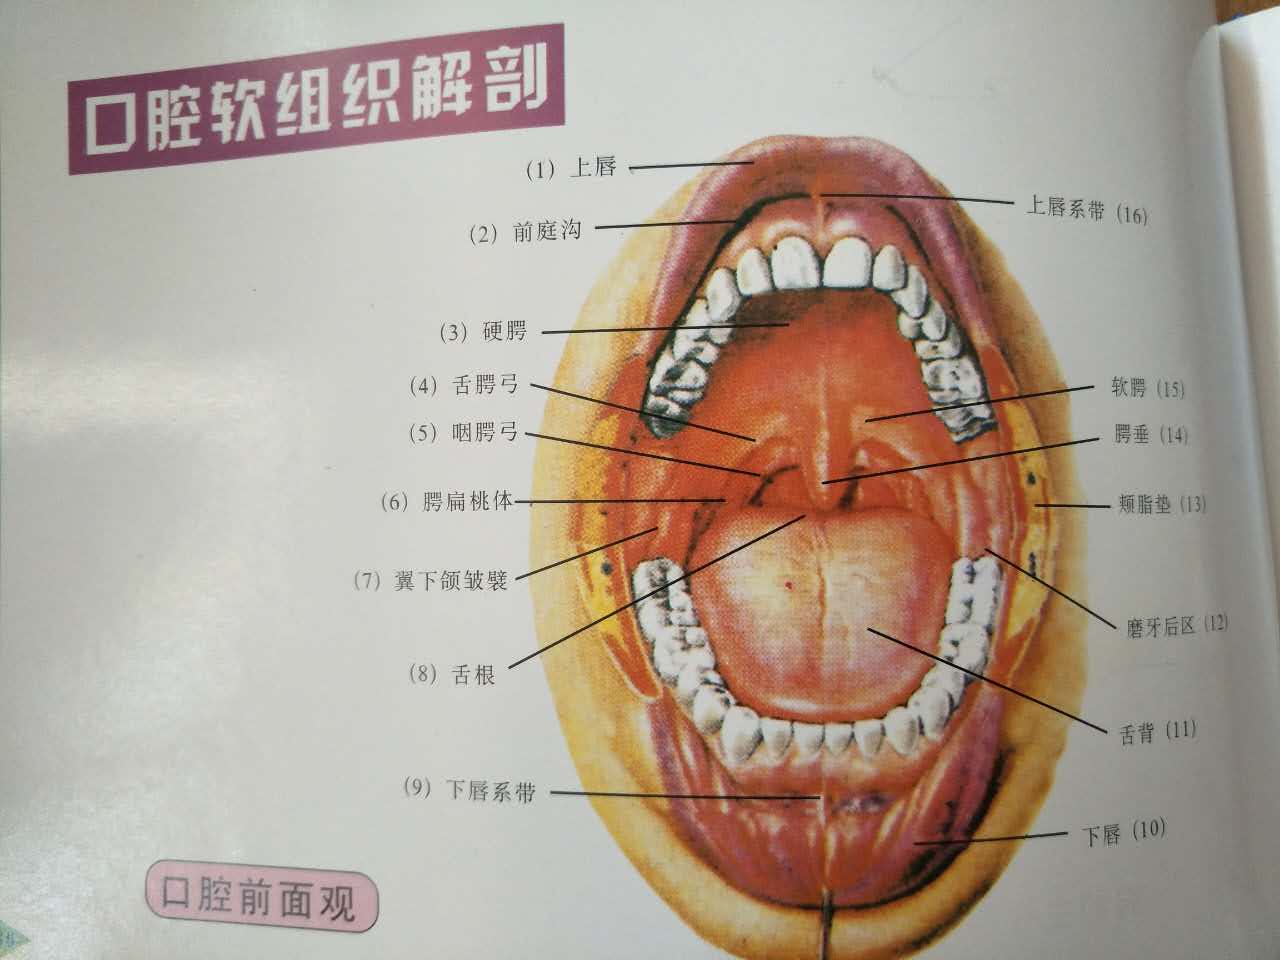 下颌磨牙解剖形态图谱图片